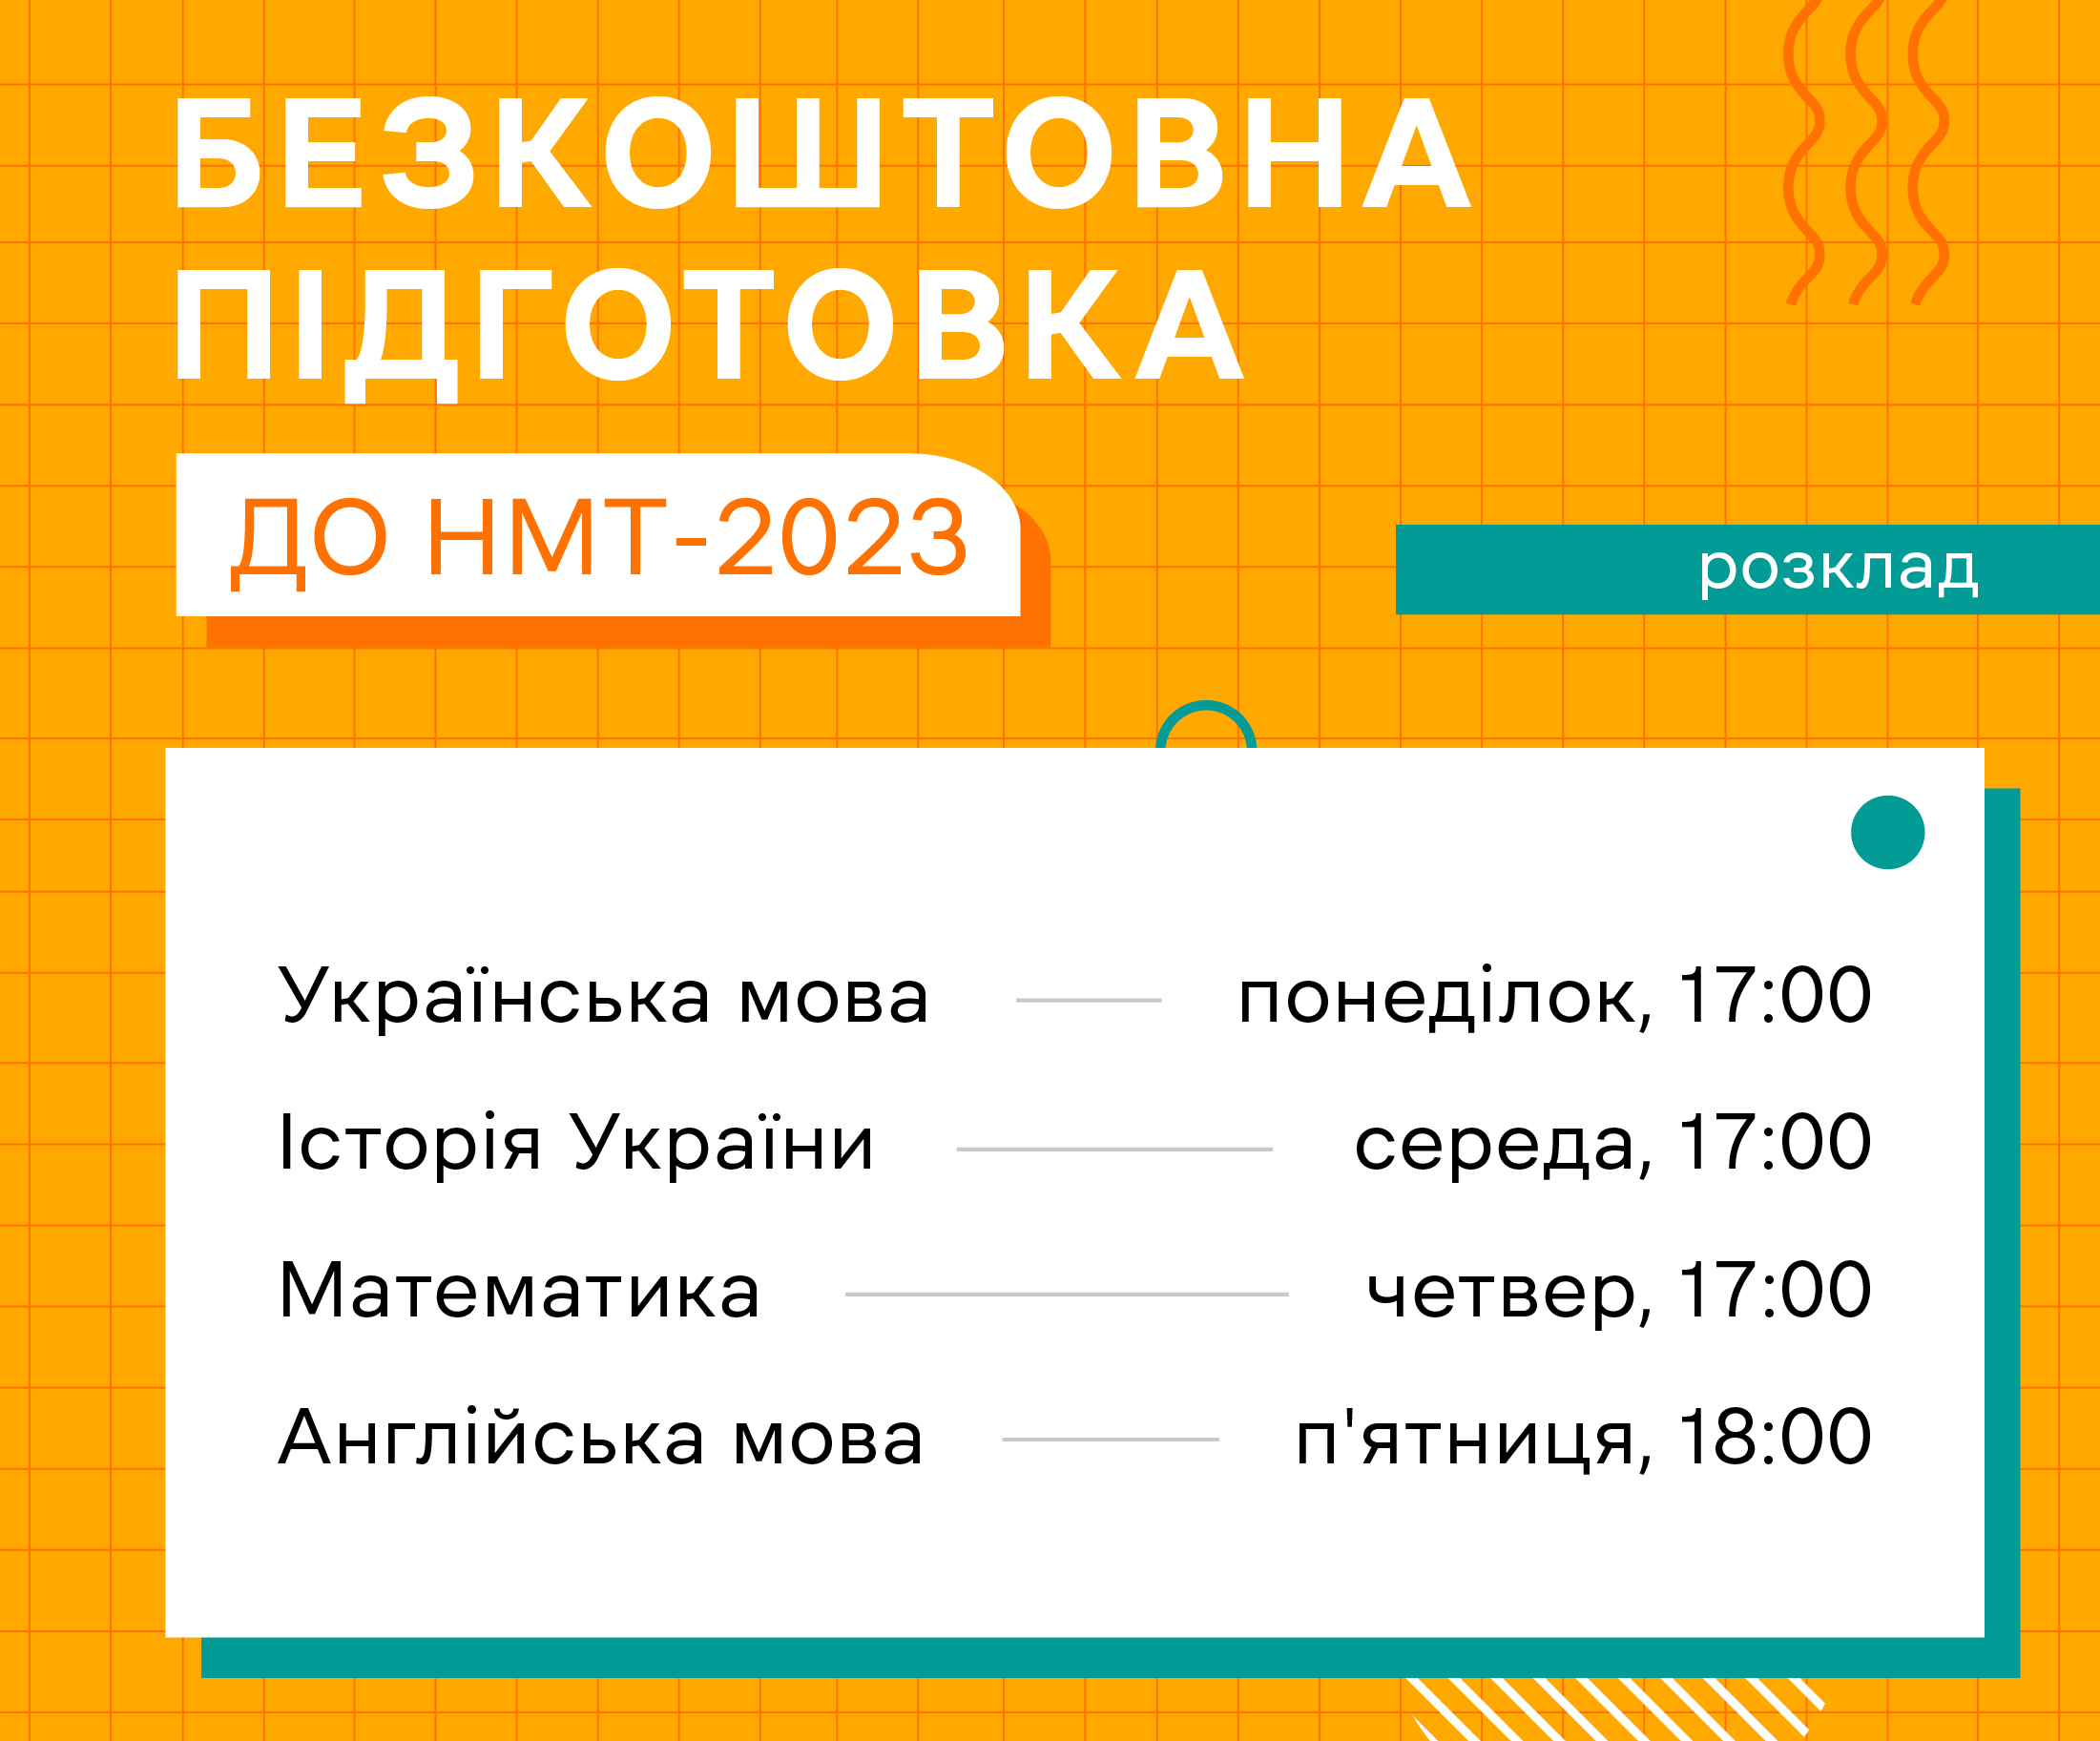 Безплатна підготовка вступників до НМТ-2023 онлайн | Нова українська школа